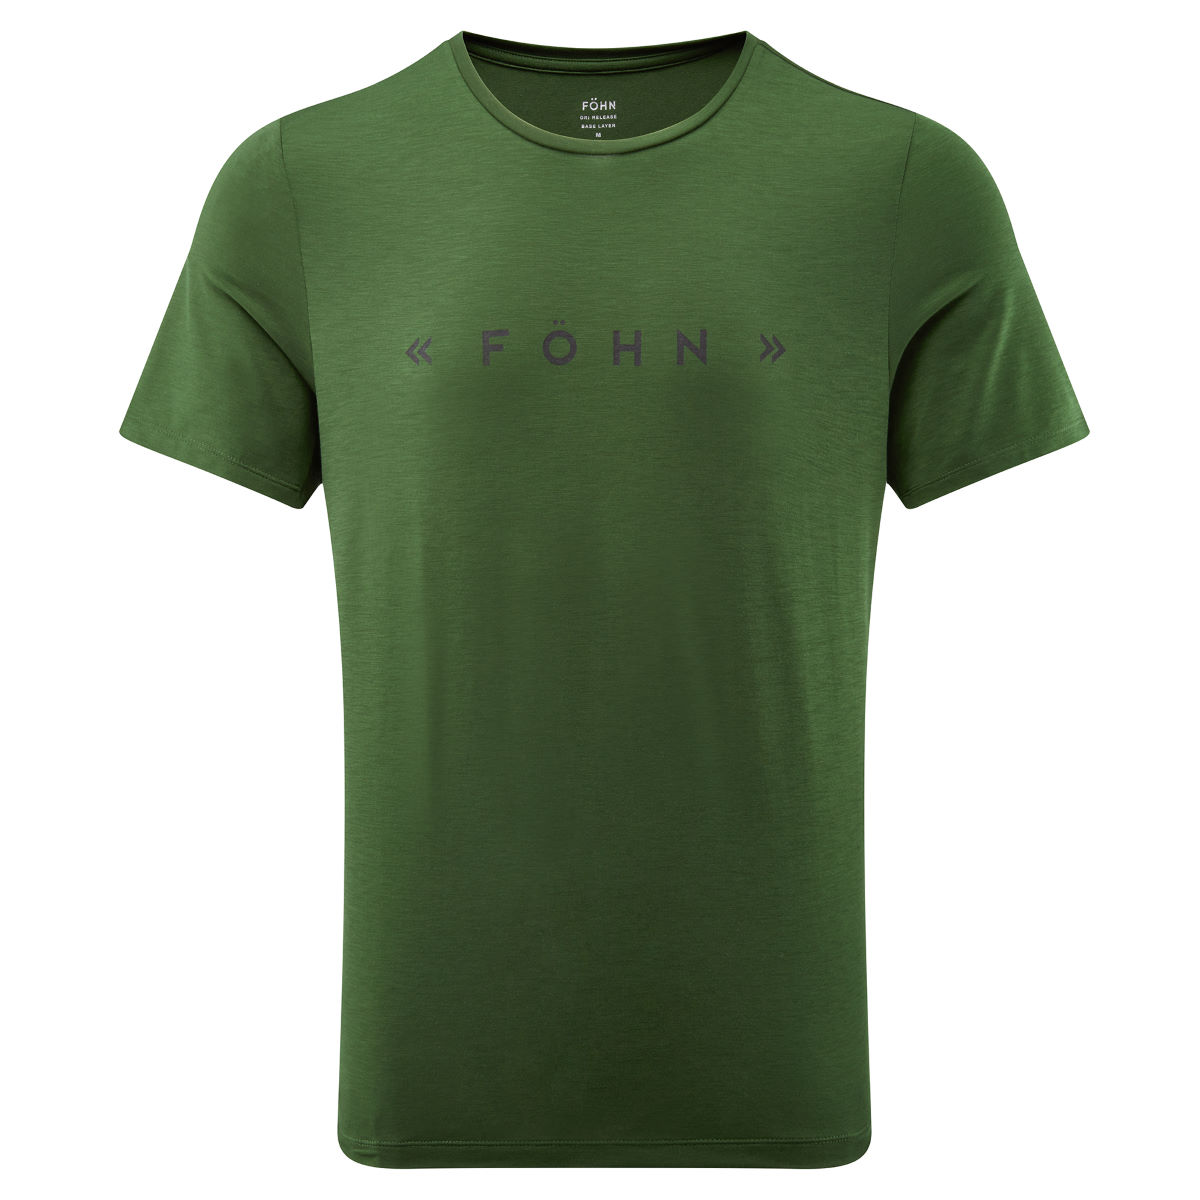 Camiseta Föhn Dry Release - Camisetas